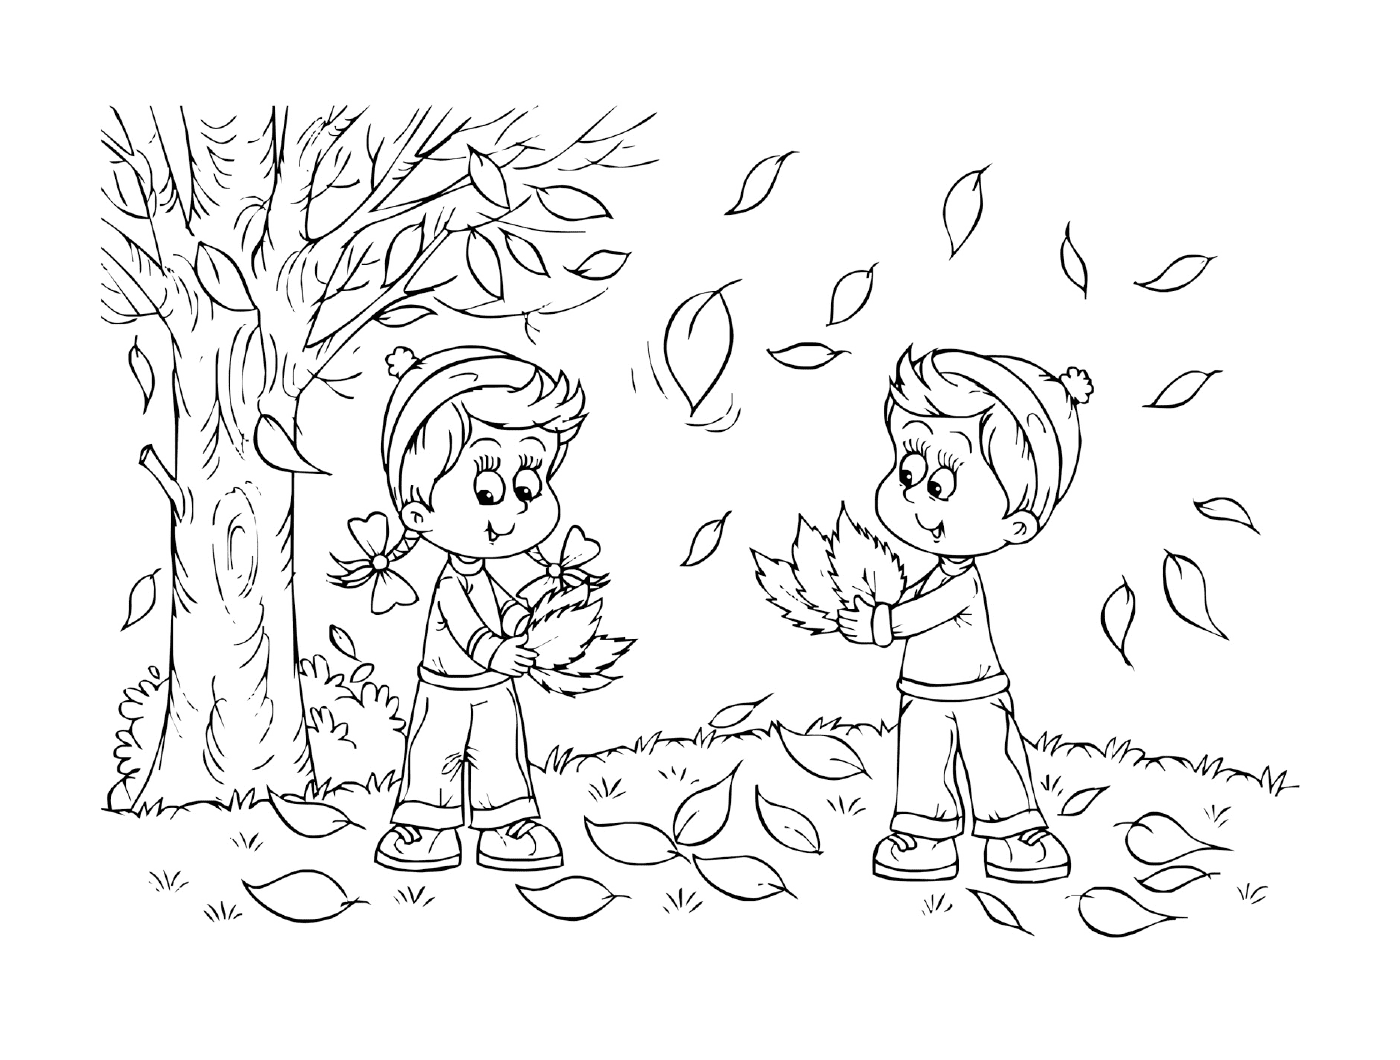  Dos niños jugando con hojas en un parque 